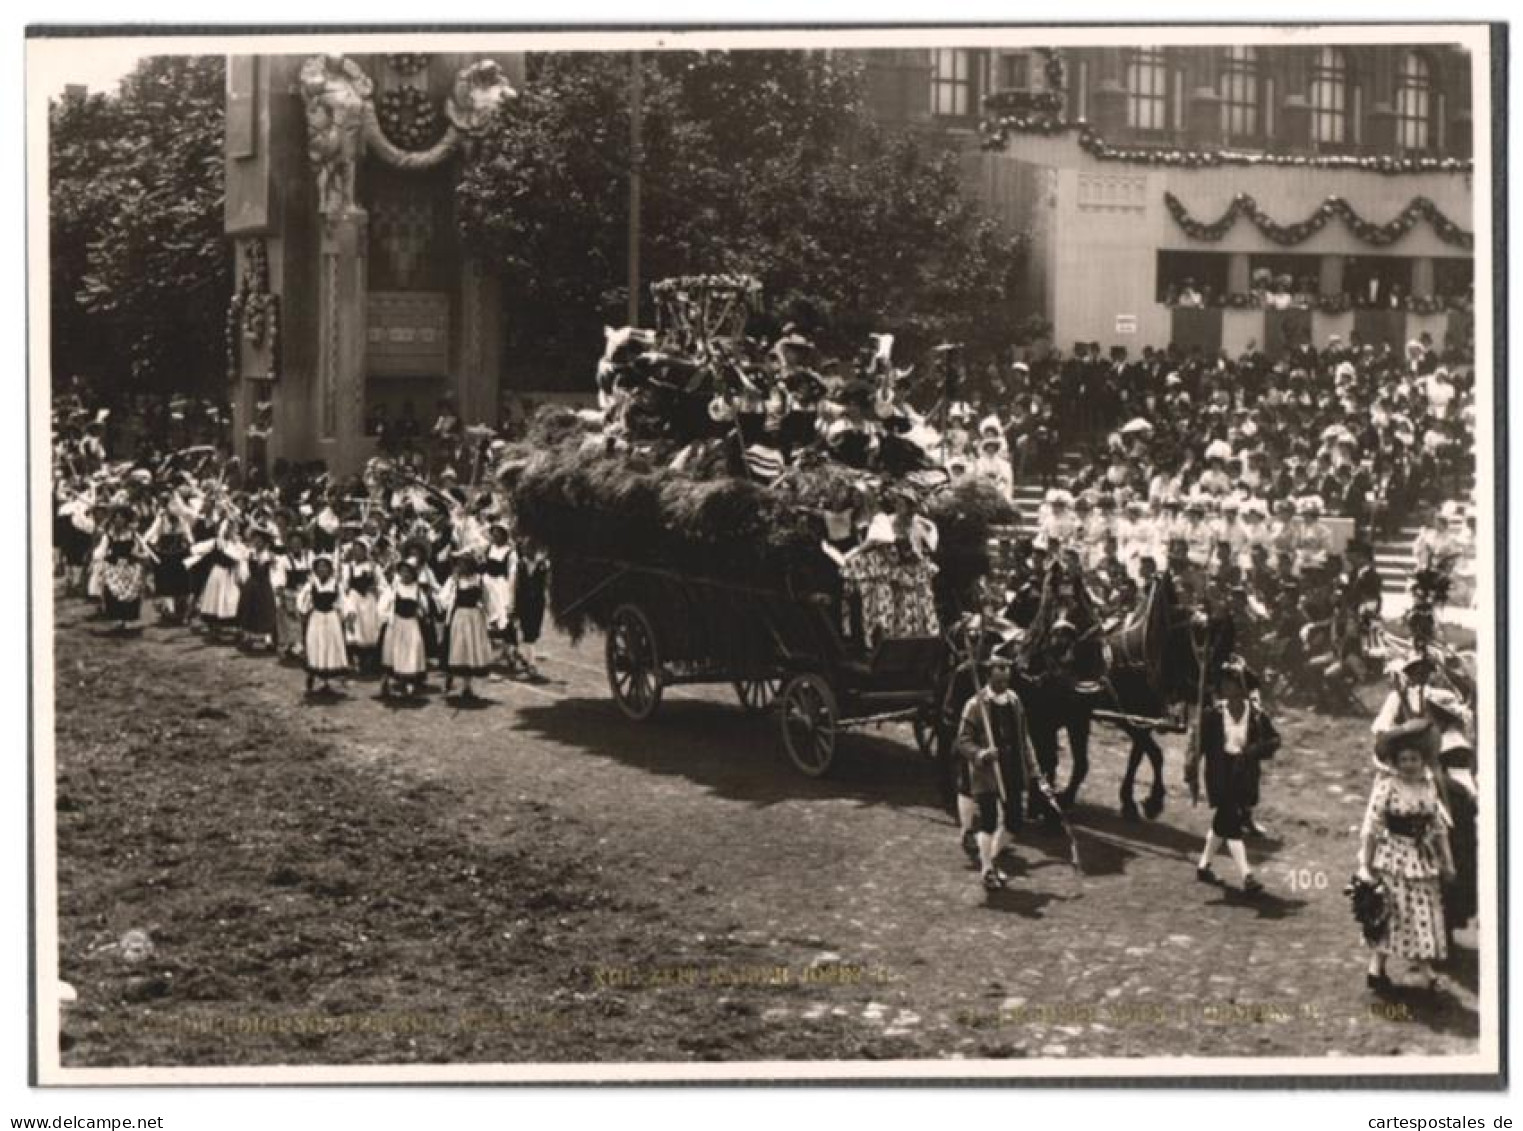 Archiv-Fotografie R. Lechner, Wien, Ansicht Wien, Kaiser-Huldigungs-Festzug 1908, Zeit Kaiser Josef II.  - Famous People